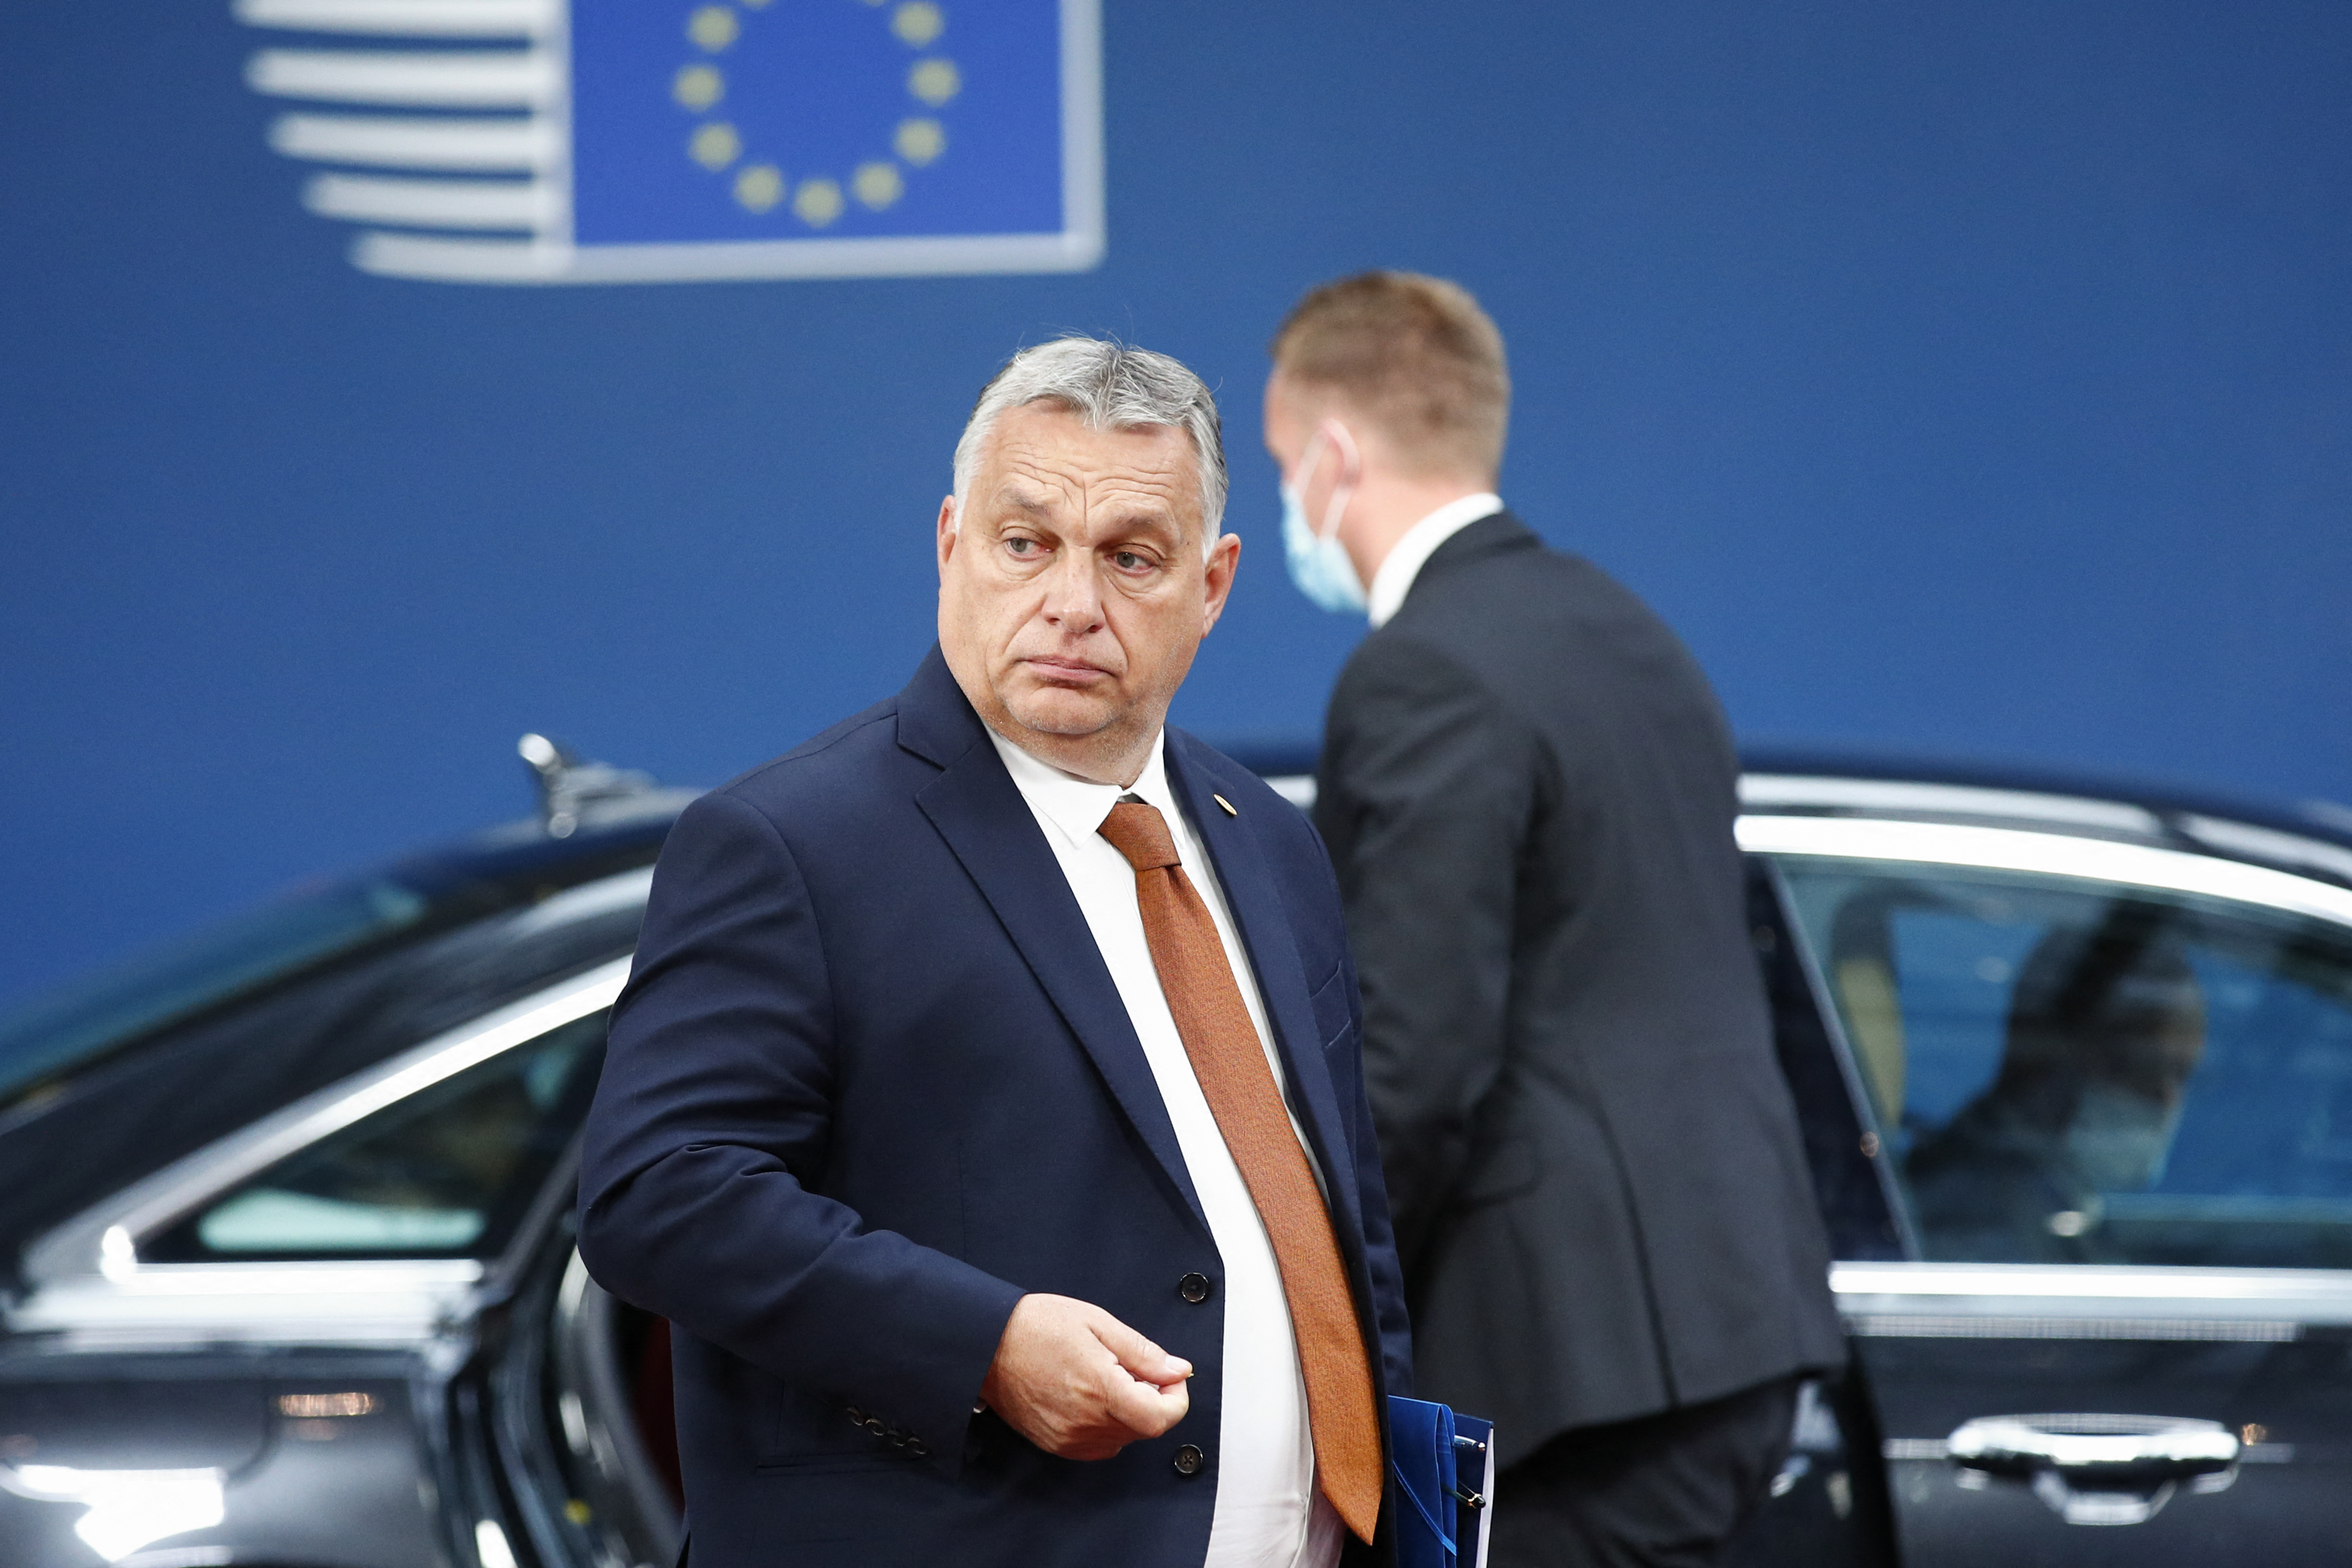 Brüsszelben a tárgyalóasztalon van egy terv, amely szerint Magyarország szavazati jogának megvonása sem elképzelhetetlen az EU-ban